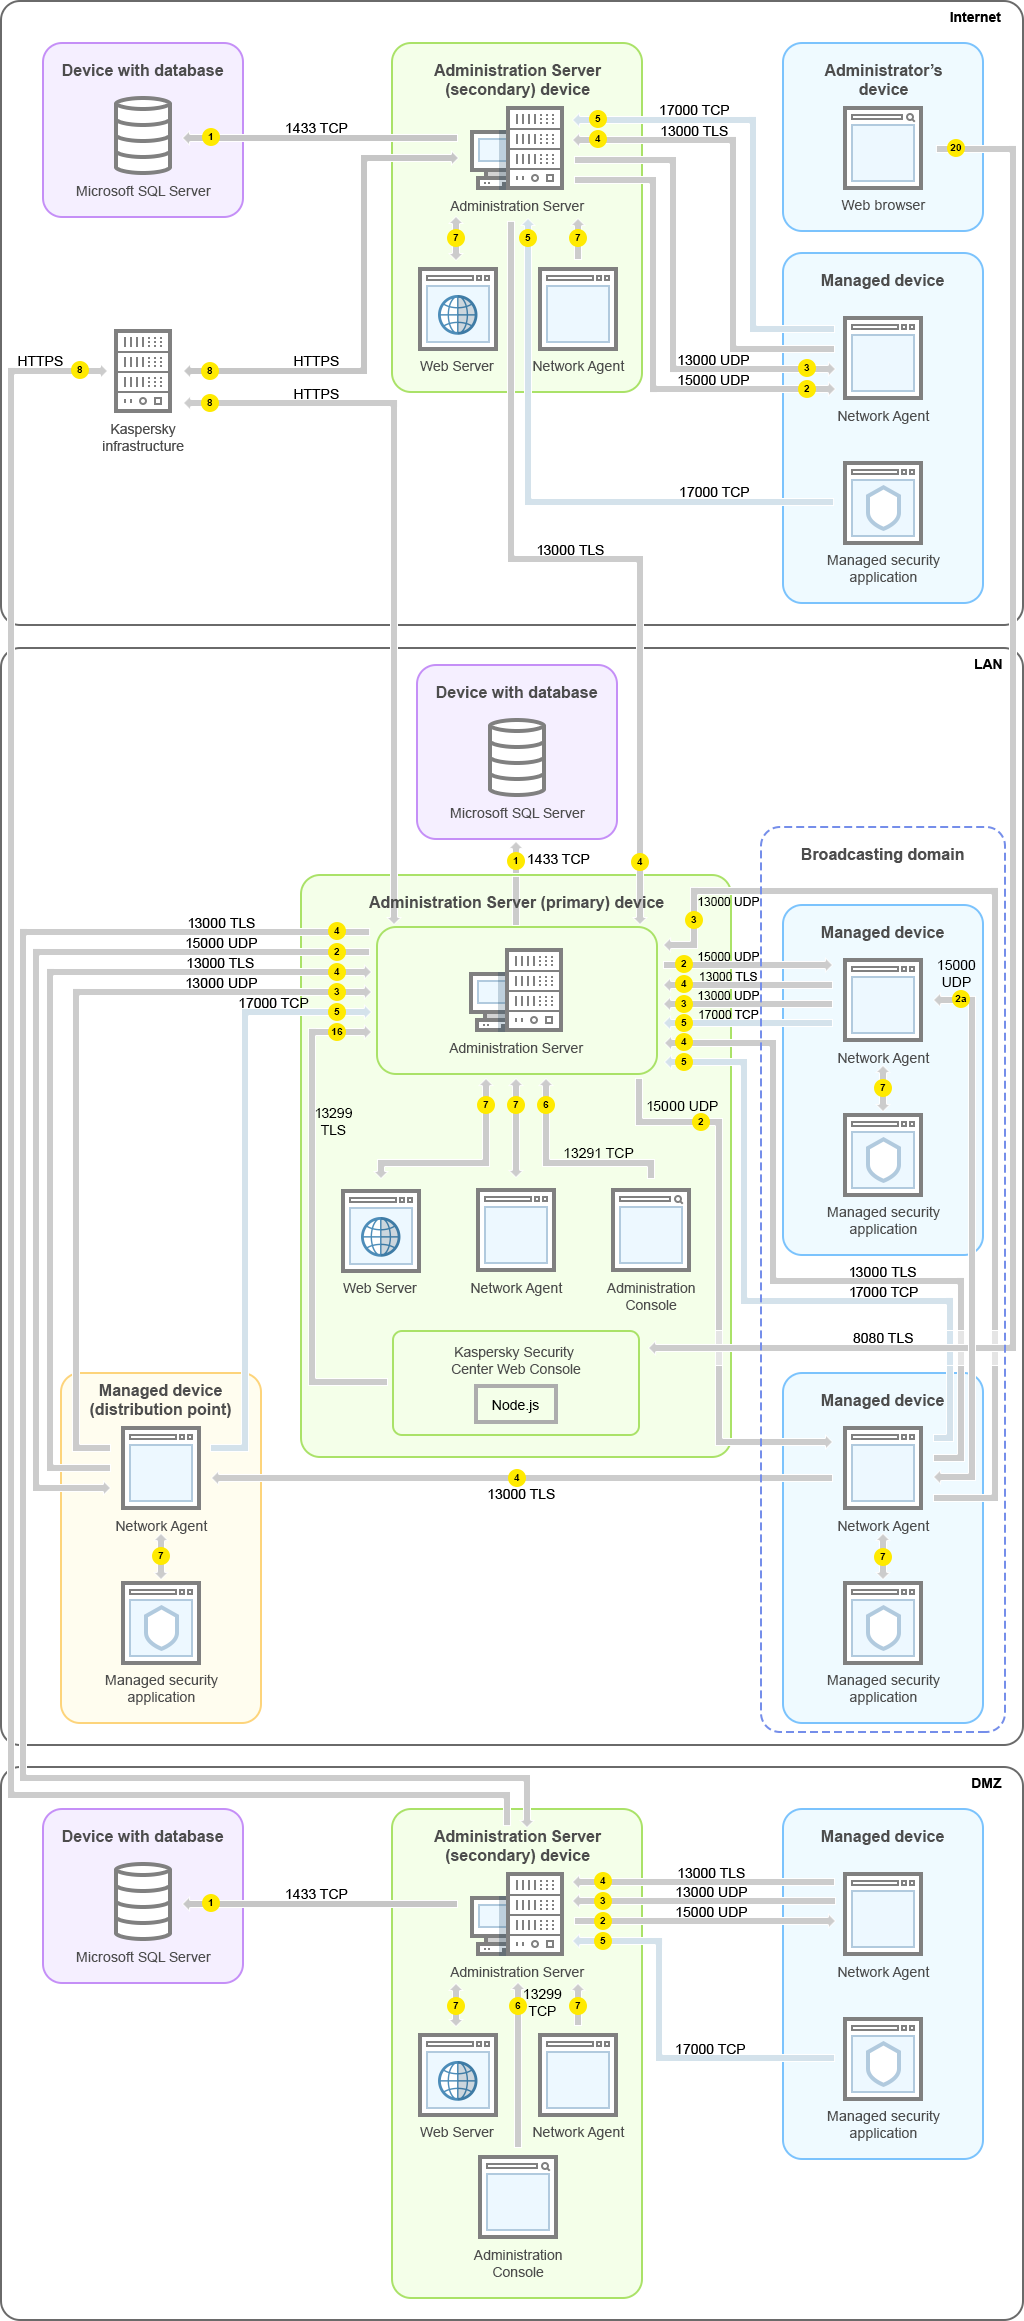 プライマリ管理サーバーとその管理対象デバイスは LAN 上に、セカンダリ管理サーバーとその管理対象デバイスは DMZ 内に、別のセカンダリ管理サーバーとその管理対象デバイスと管理者デバイスはインターネット上にあります。